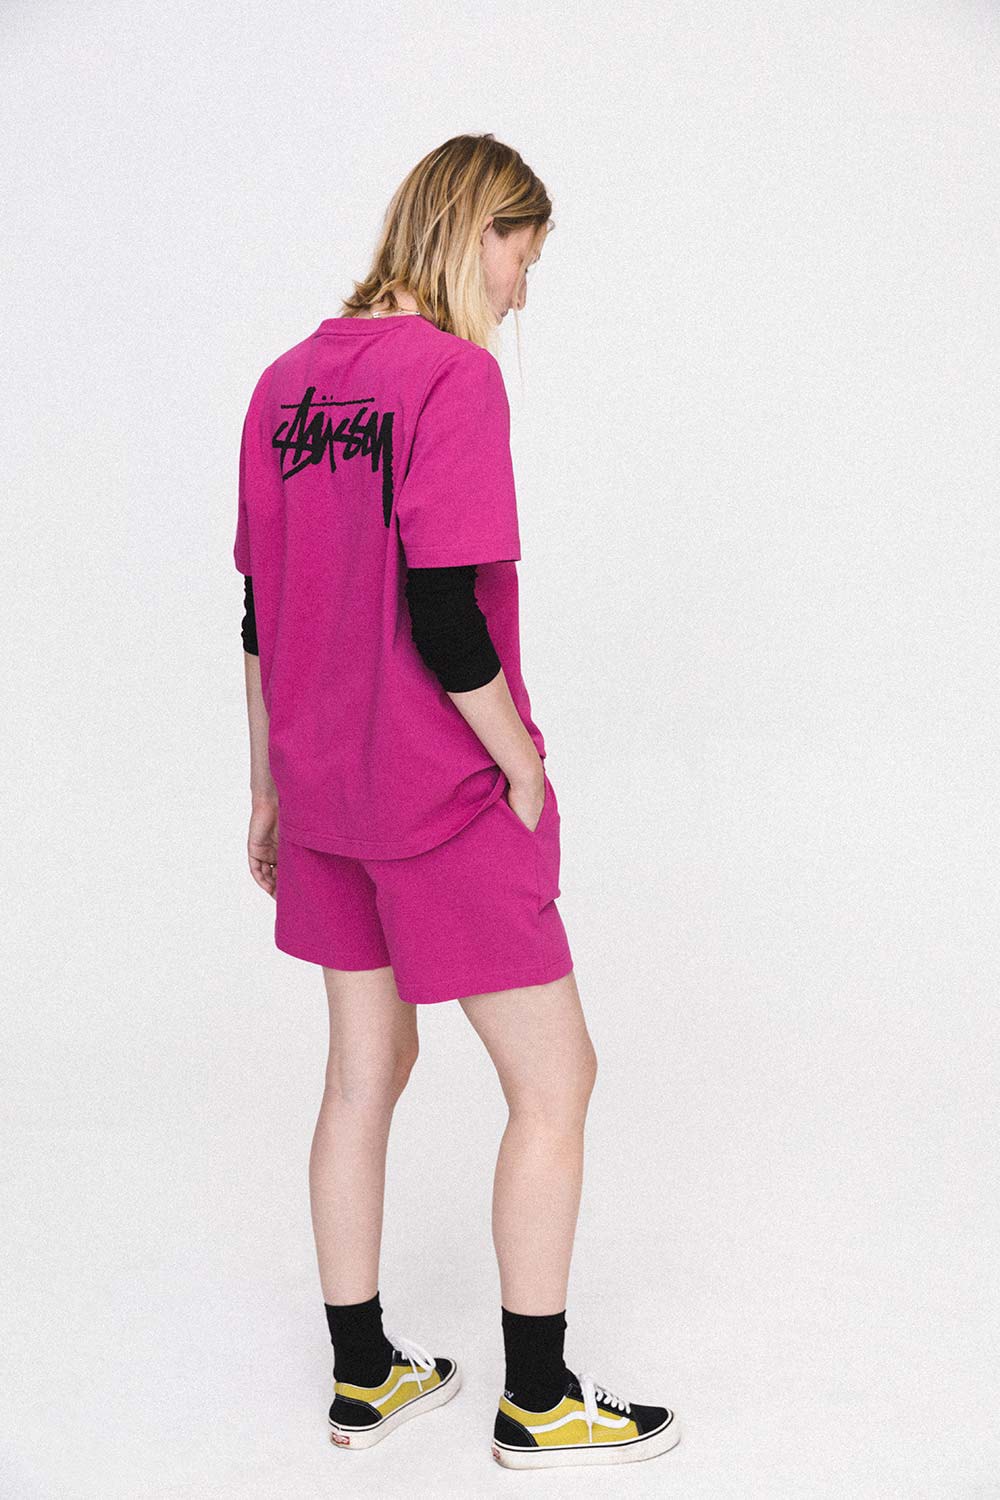 Stussy Women Summer 2018 Lookbook Pink T-Shirt Logo